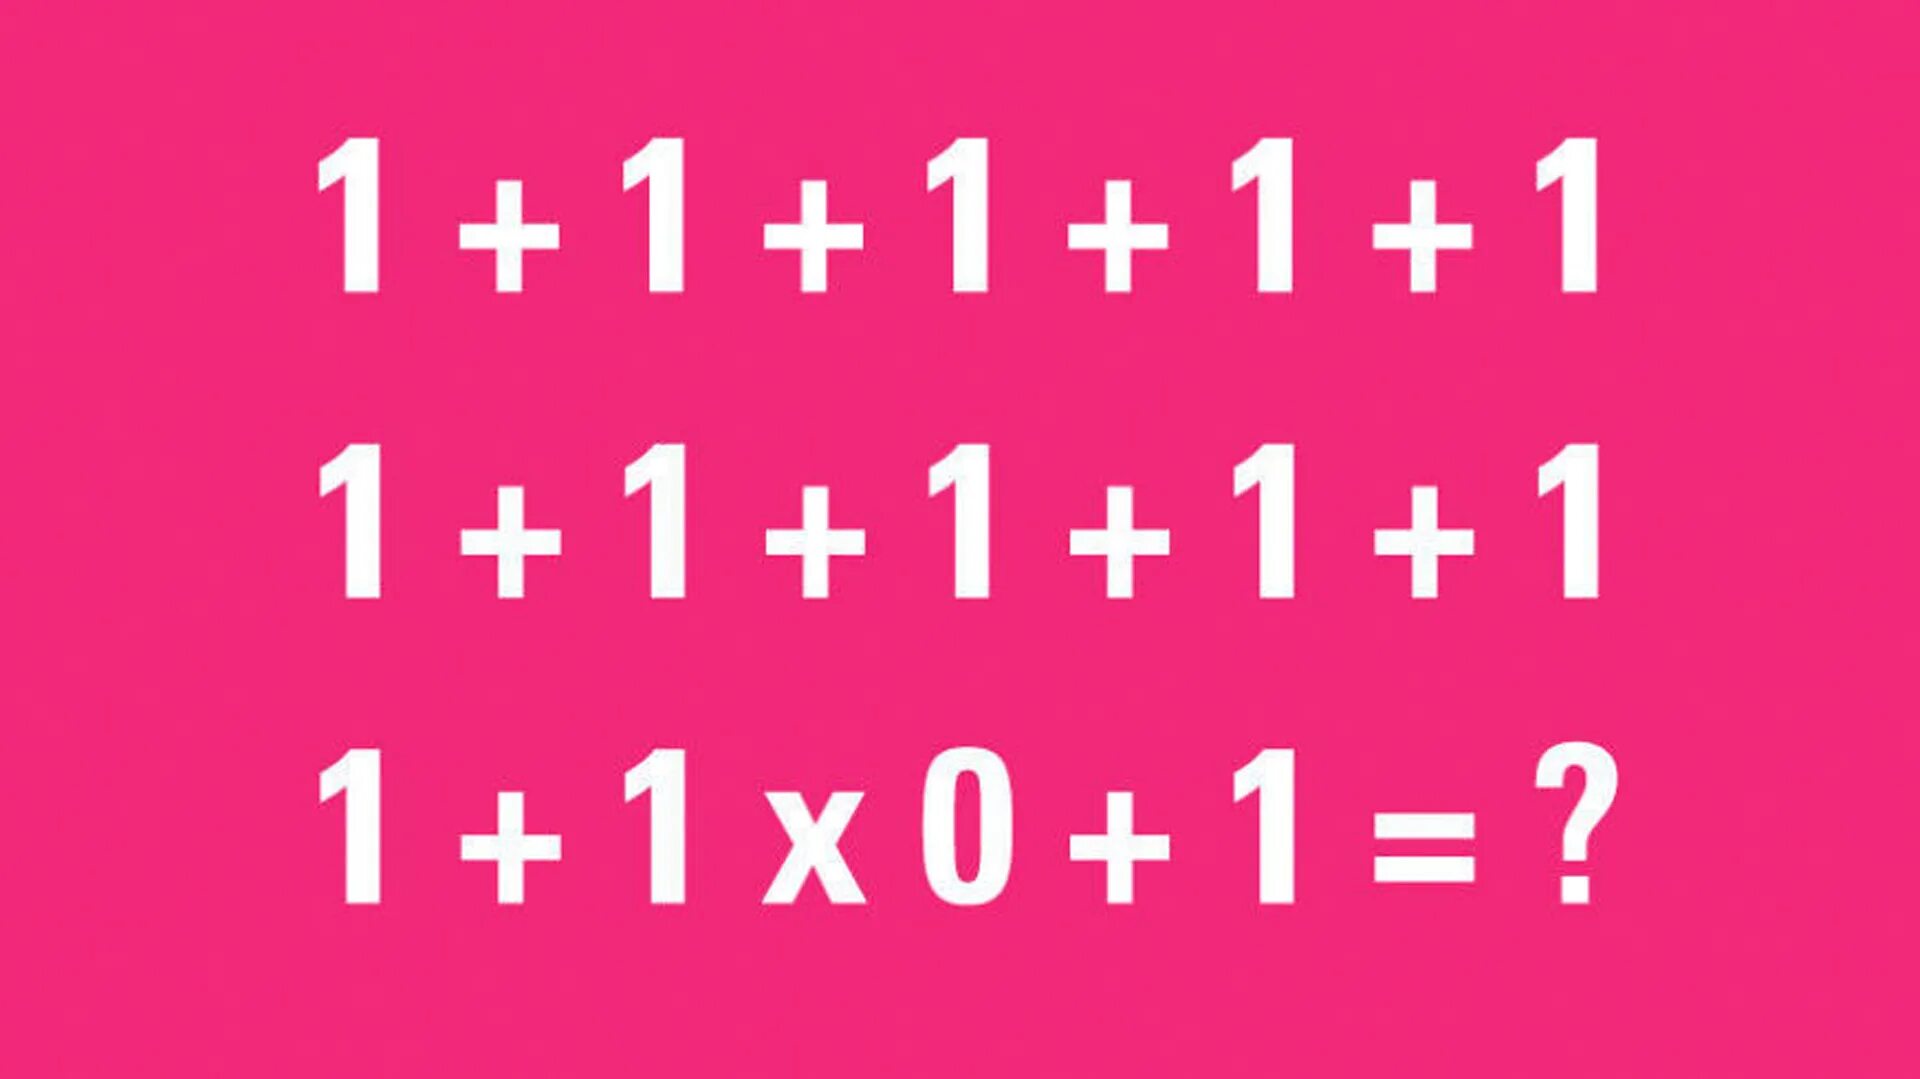 Почему 1 1 будет 0. Загадка 1+1+1+1+1. 90 Людей не могут решить эту задачу. Головоломка 1+1+1+1+1+1+1+1+1+1+1+1 0+1 ответ. Загадки на логику с ответами 1+1+1+1+1 1+1 *0.